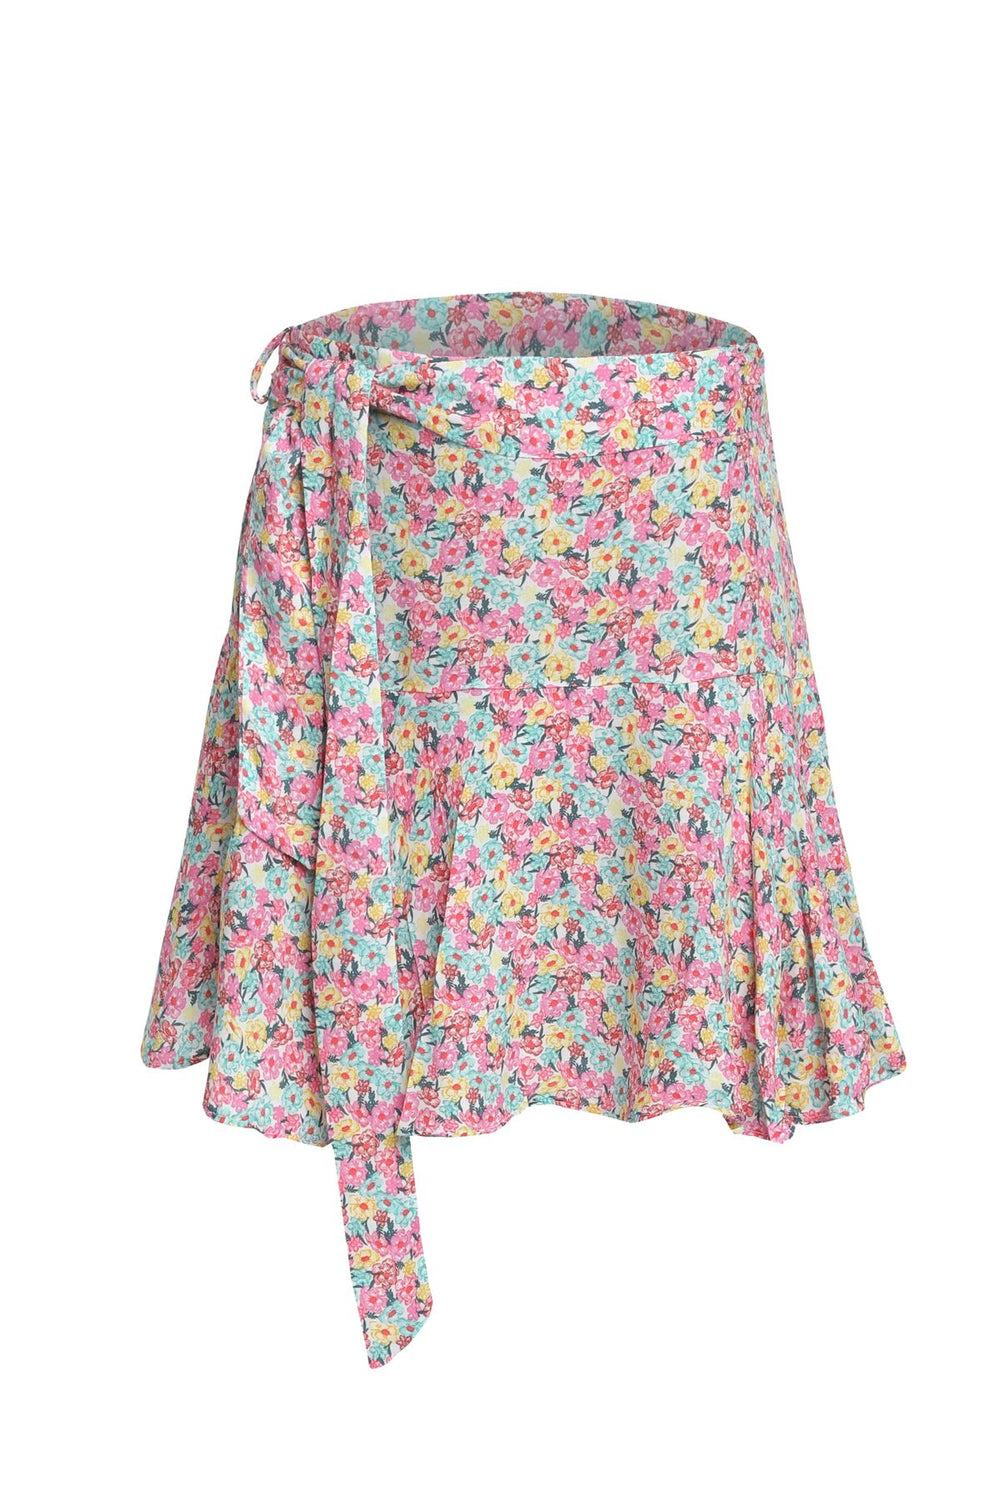 Floral Pattern Short Skirt Pink